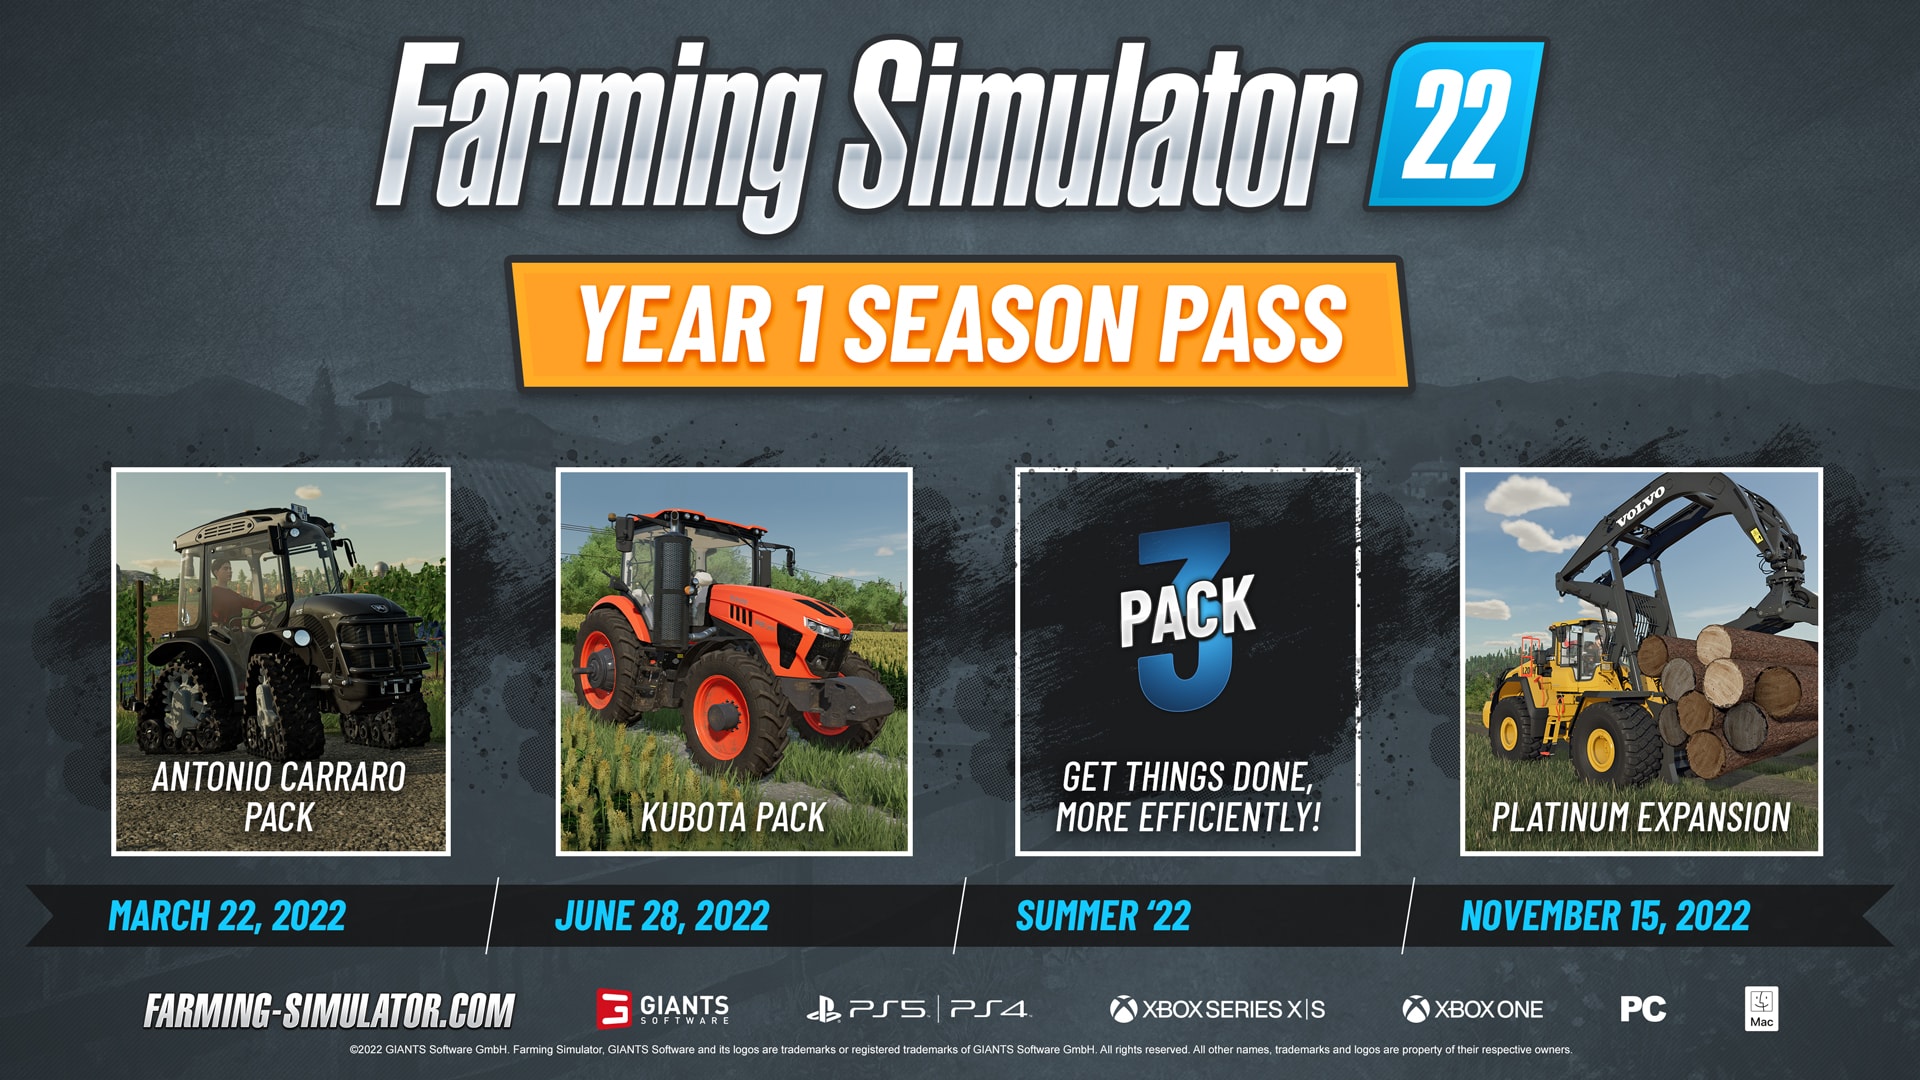 Farming Simulator 19 - Platinum Expansion